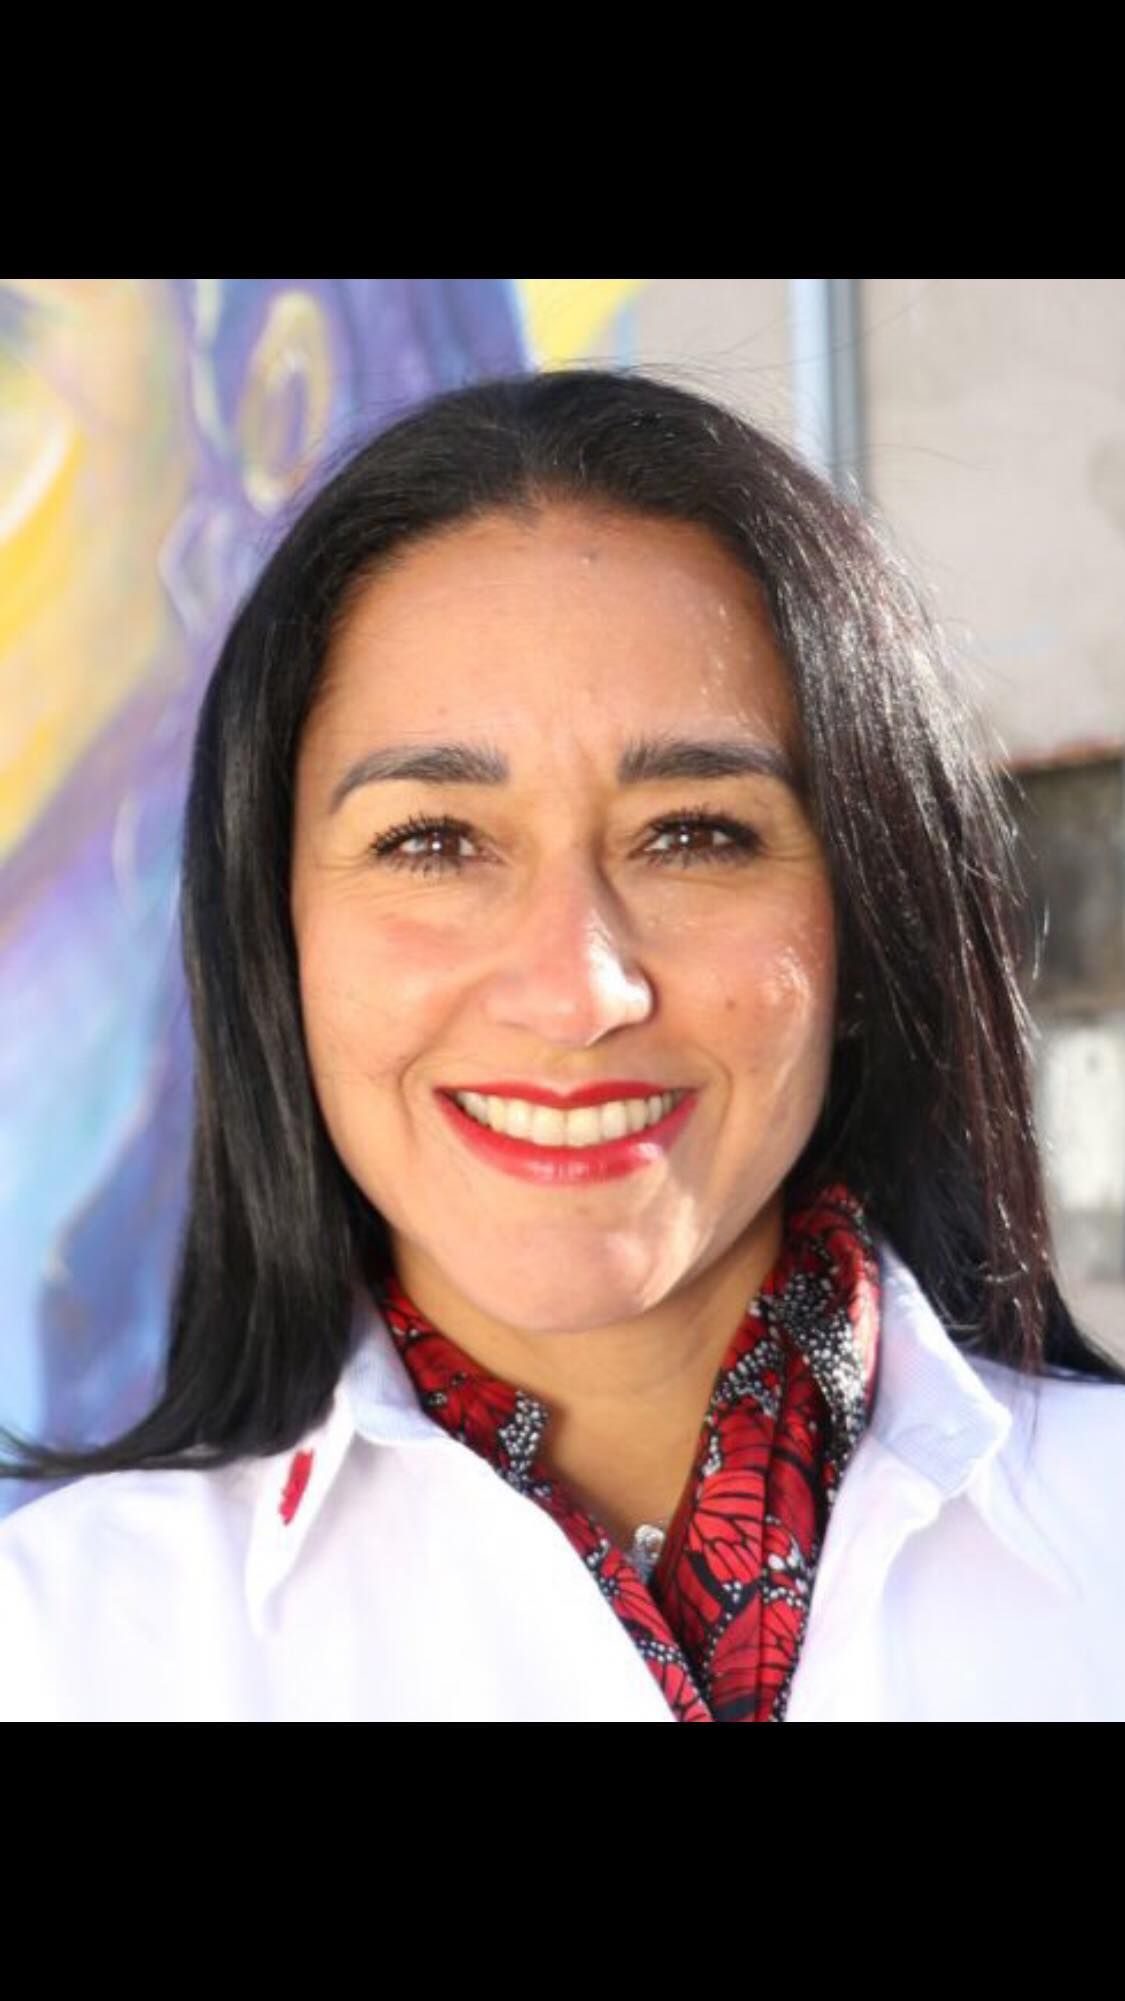 Karla Almazán Burgos, protagonista de la microhistoria en Texcoco